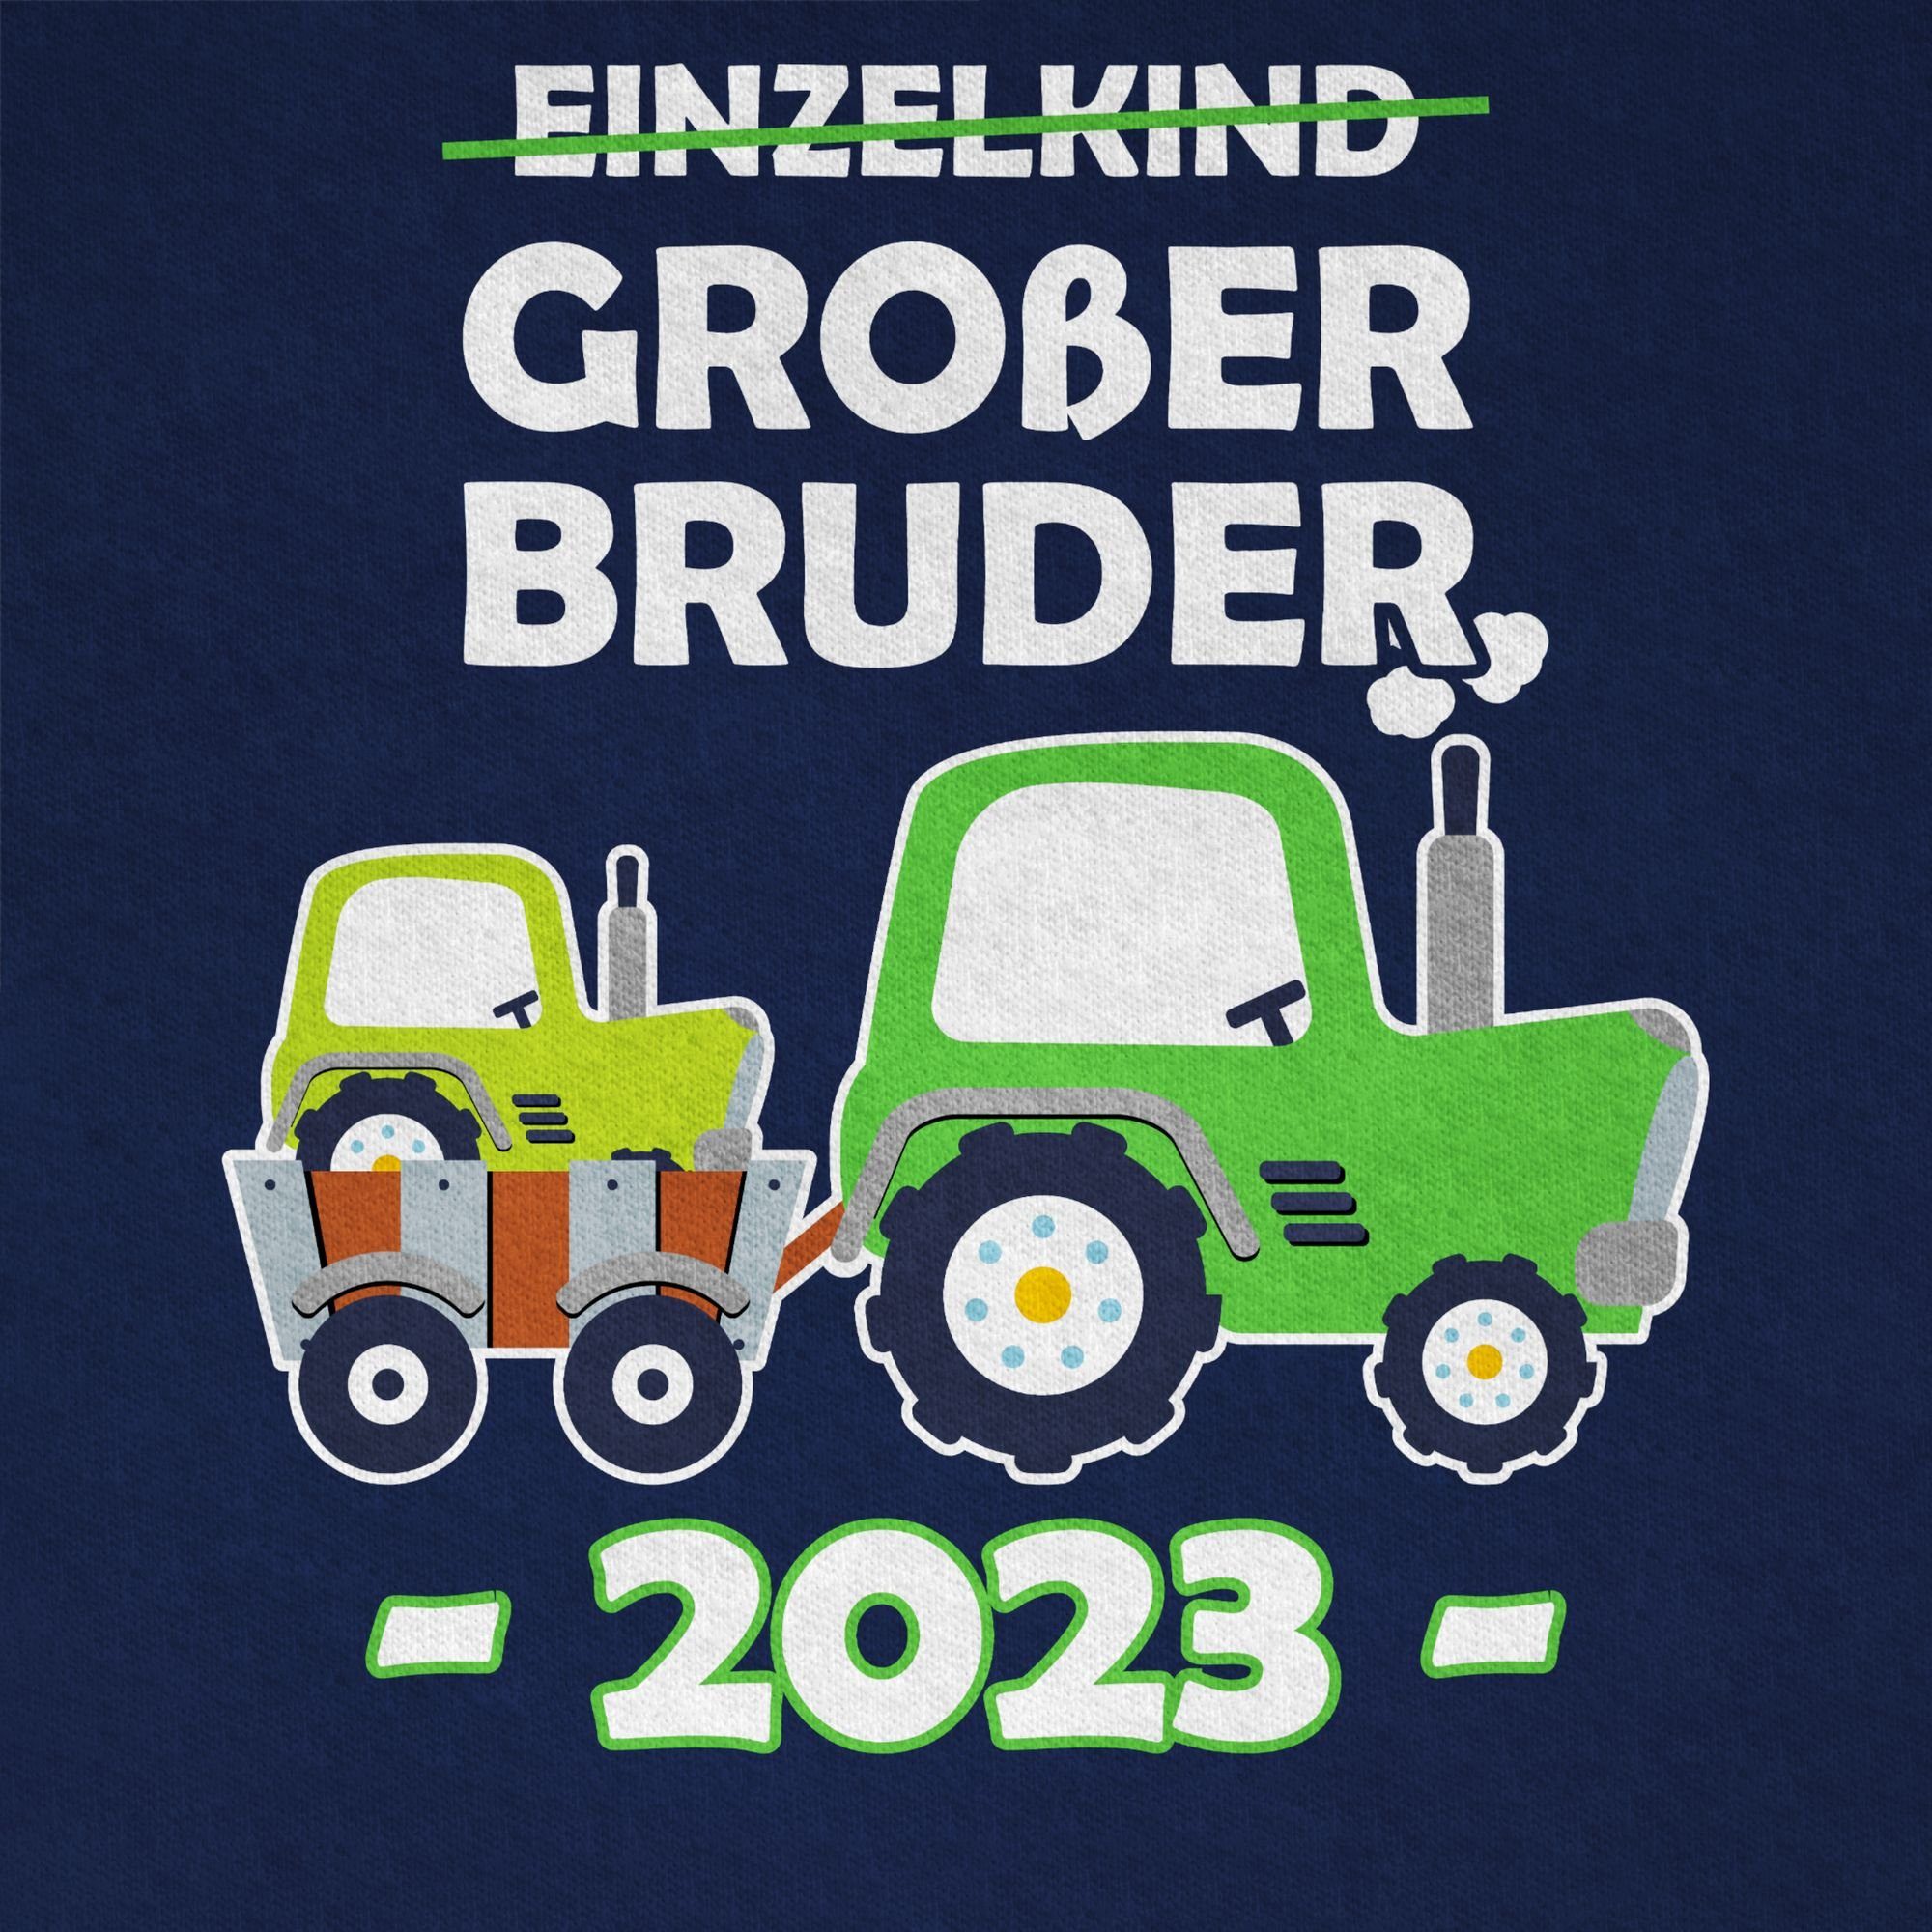 Shirtracer T-Shirt Einzelkind Großer Bruder 01 Großer 2023 Dunkelblau Traktor Bruder